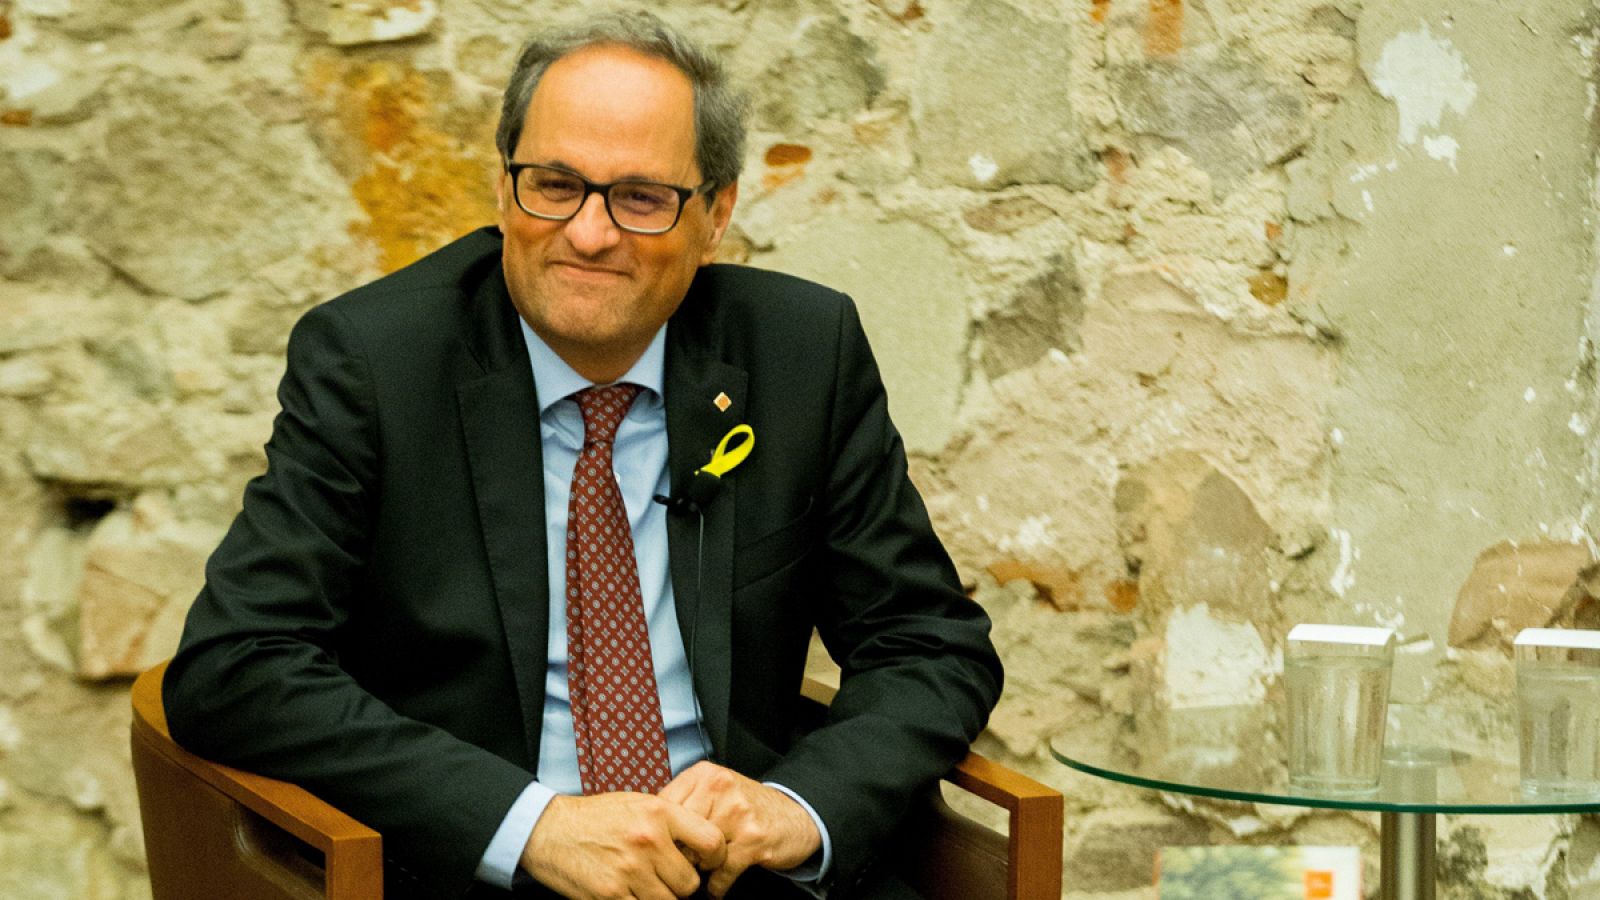 El presidente de la Generalitat, Quim Torra, durante el acto de presentación de su nuevo libro El quadern suís.